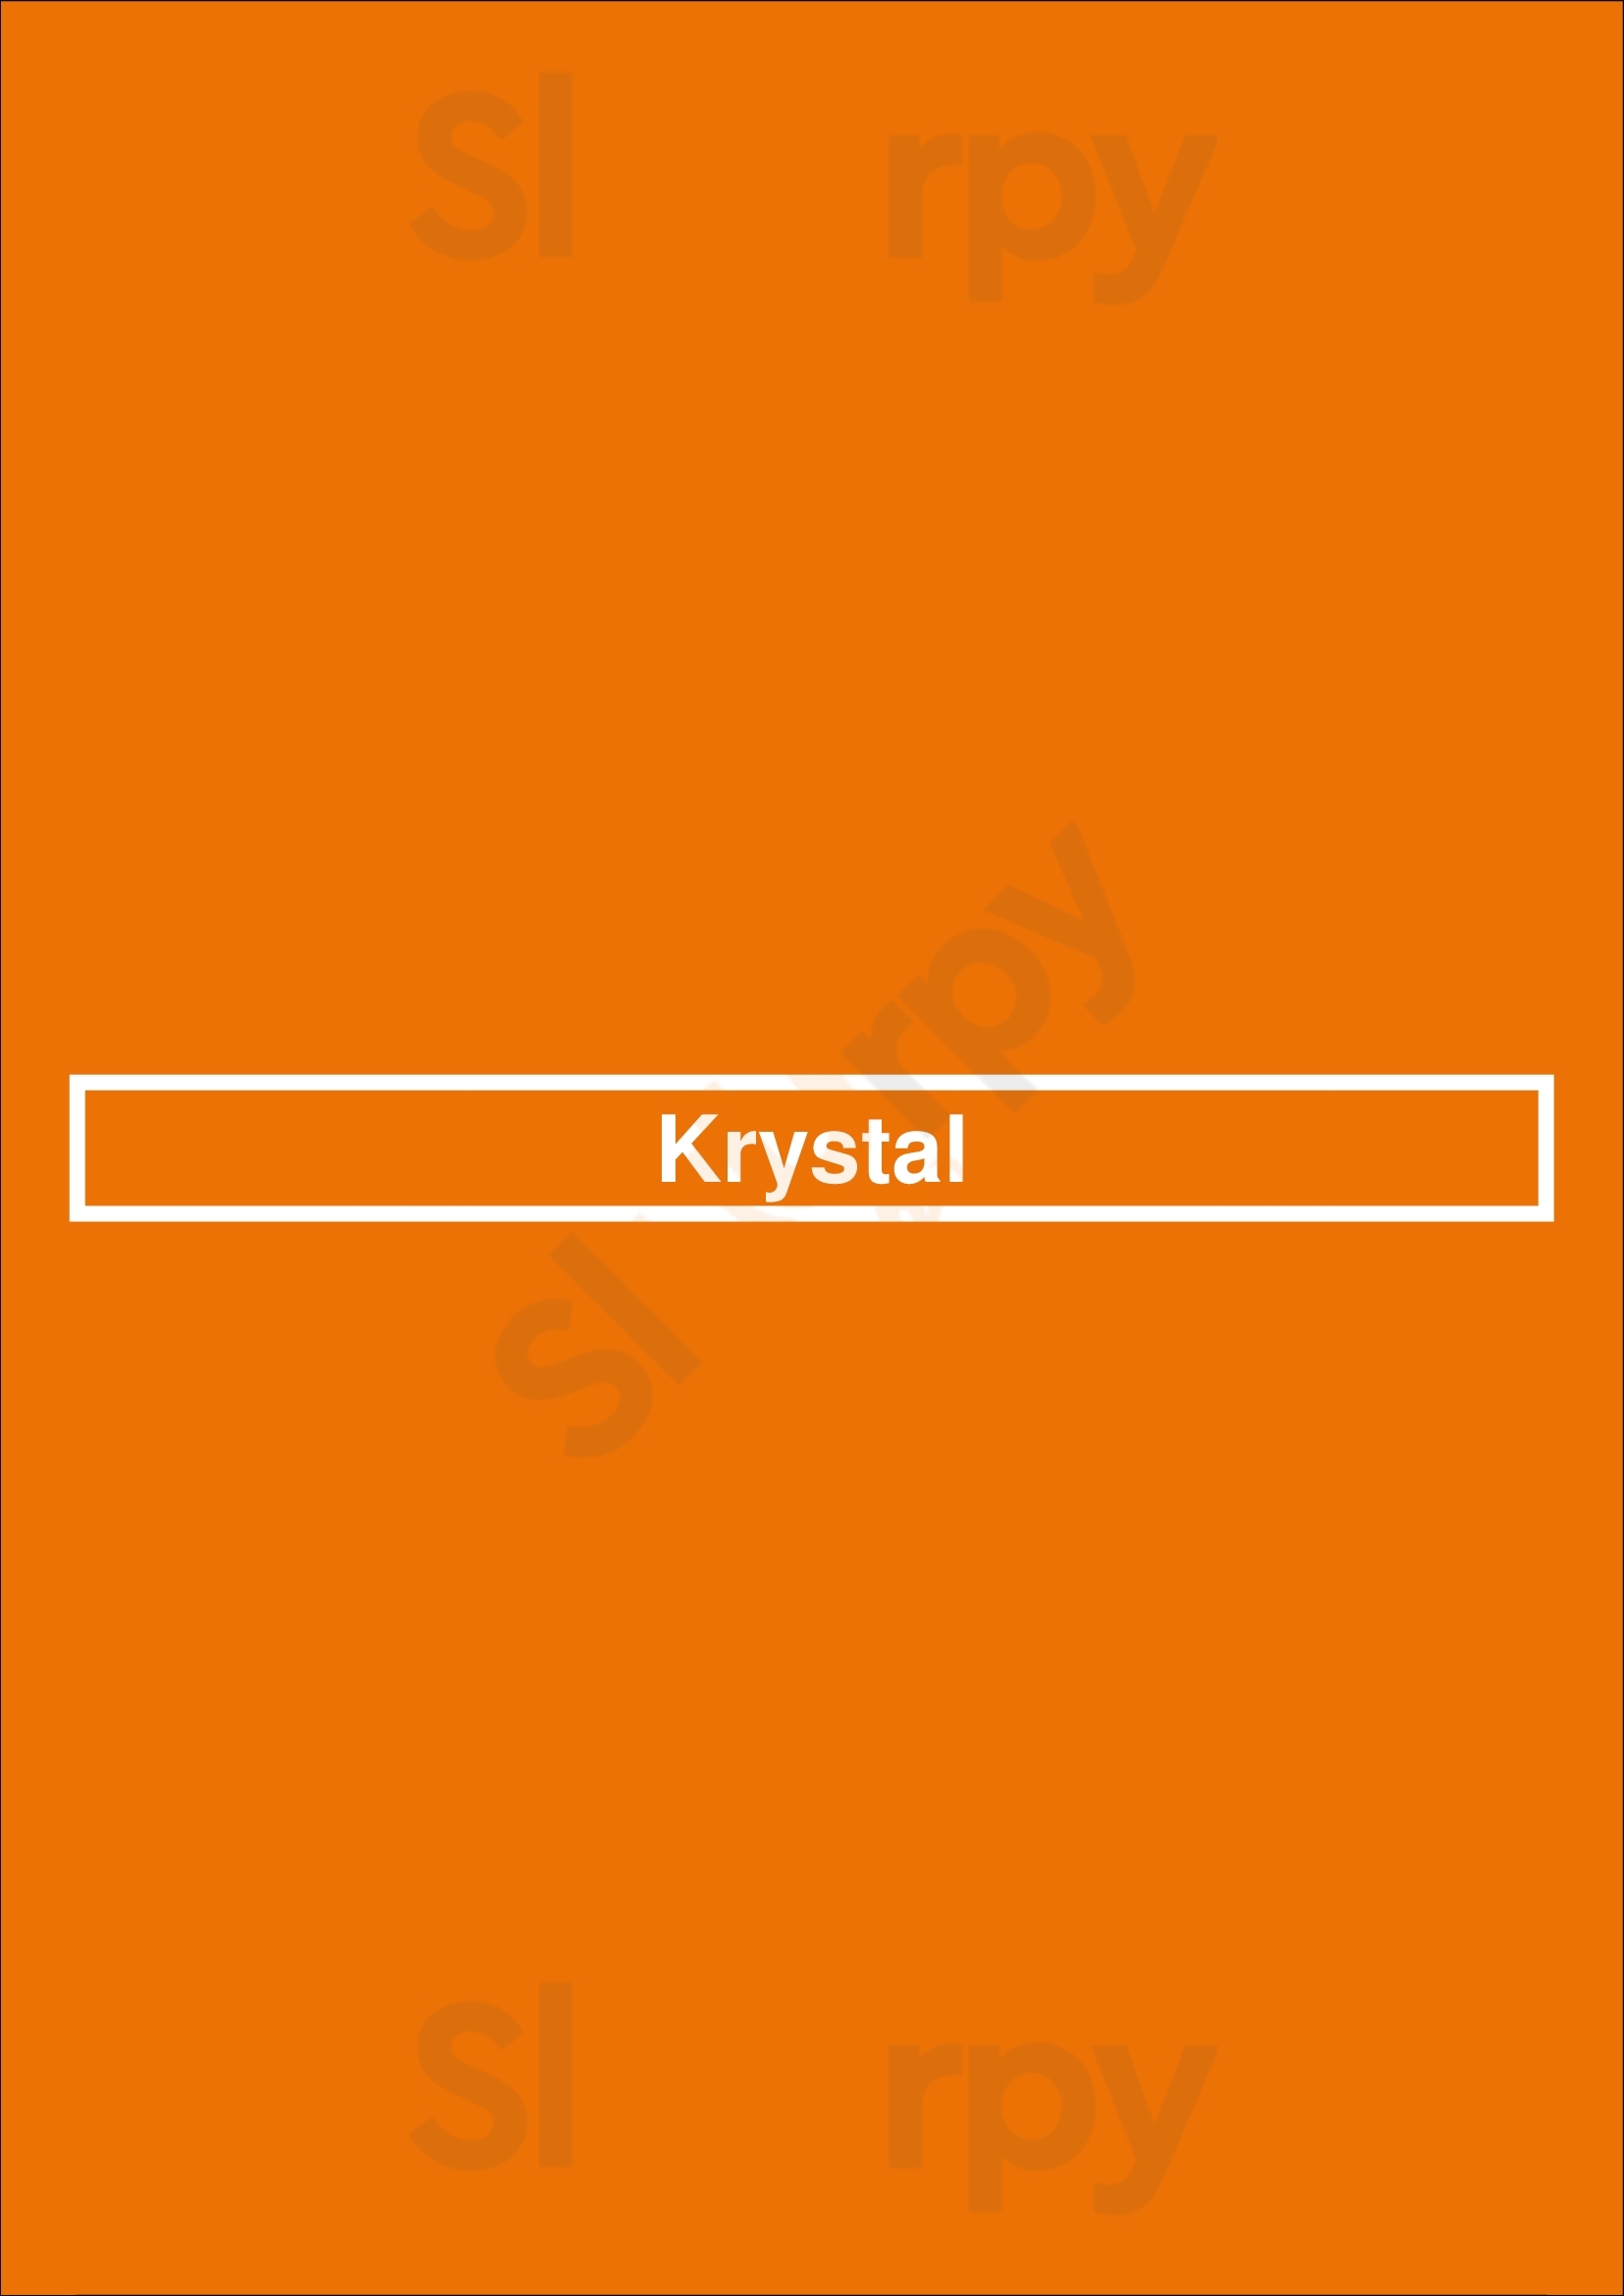 Krystal Knoxville Menu - 1